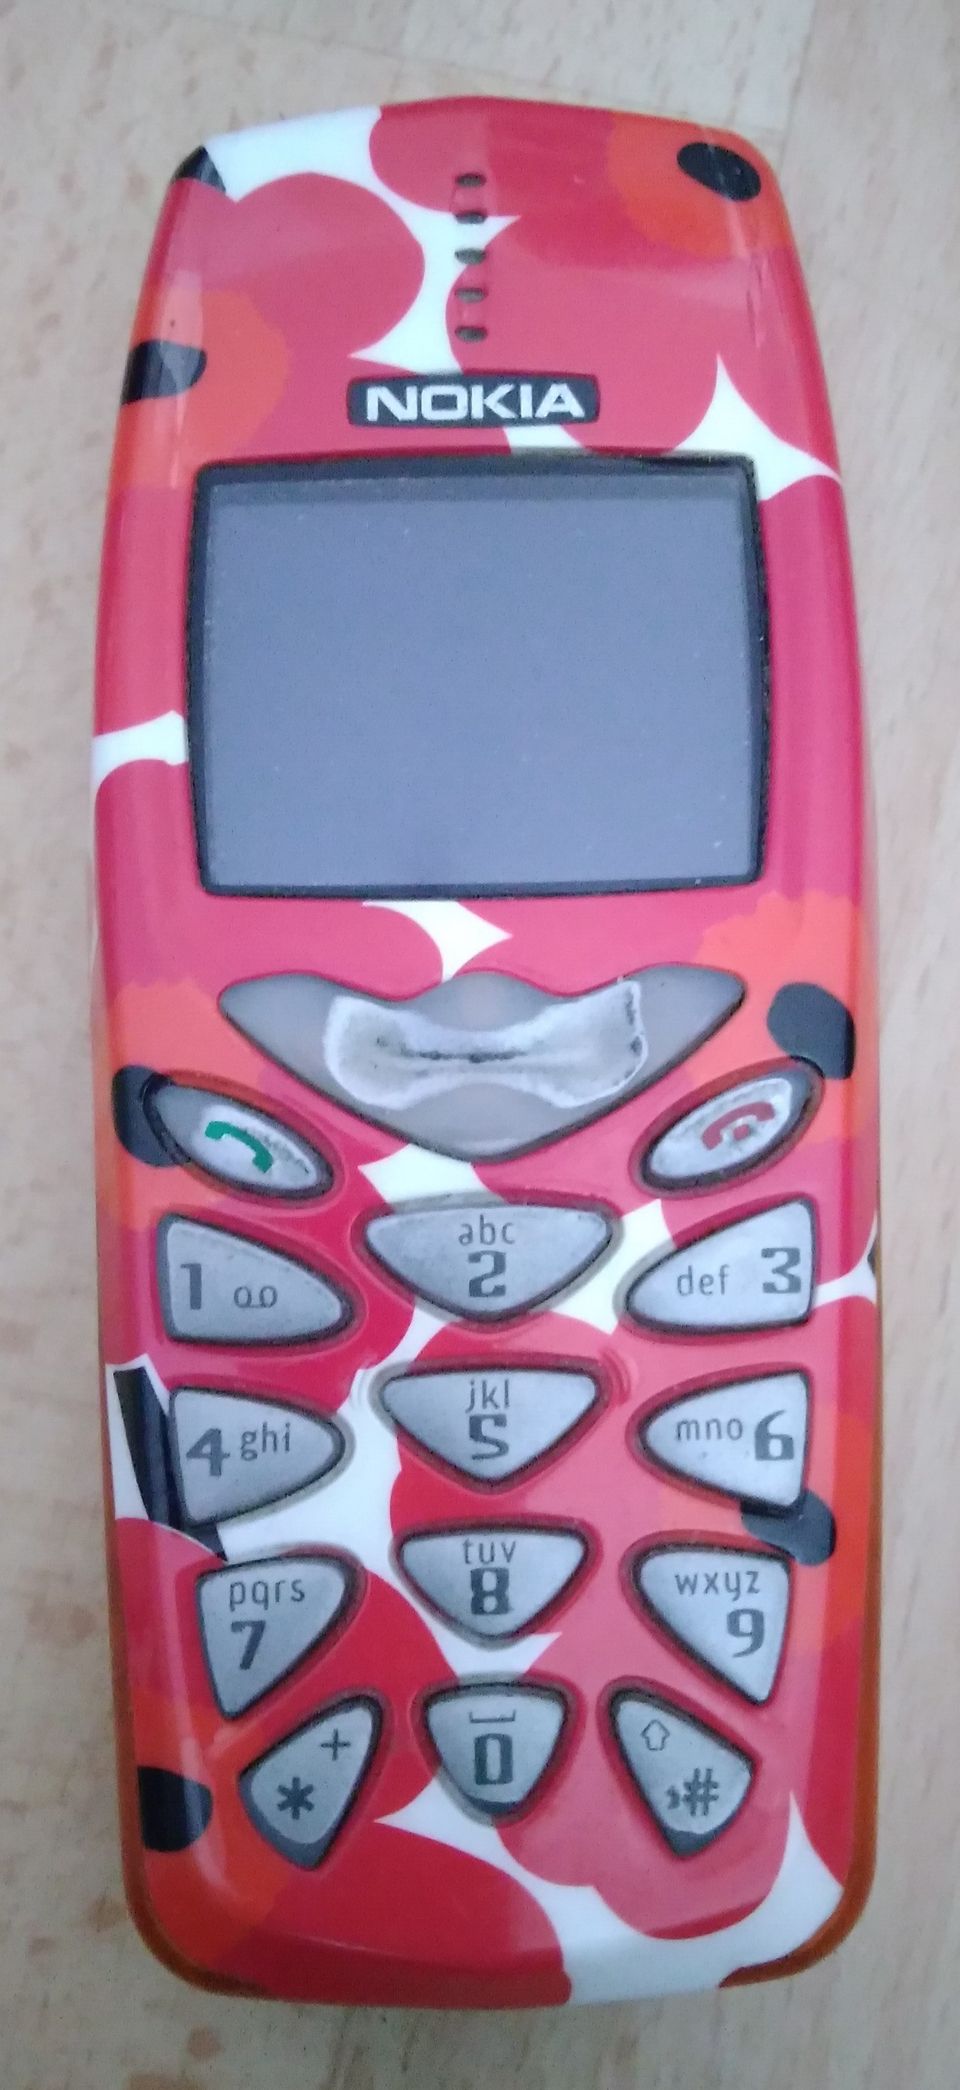 Marimekko Nokia 3510i